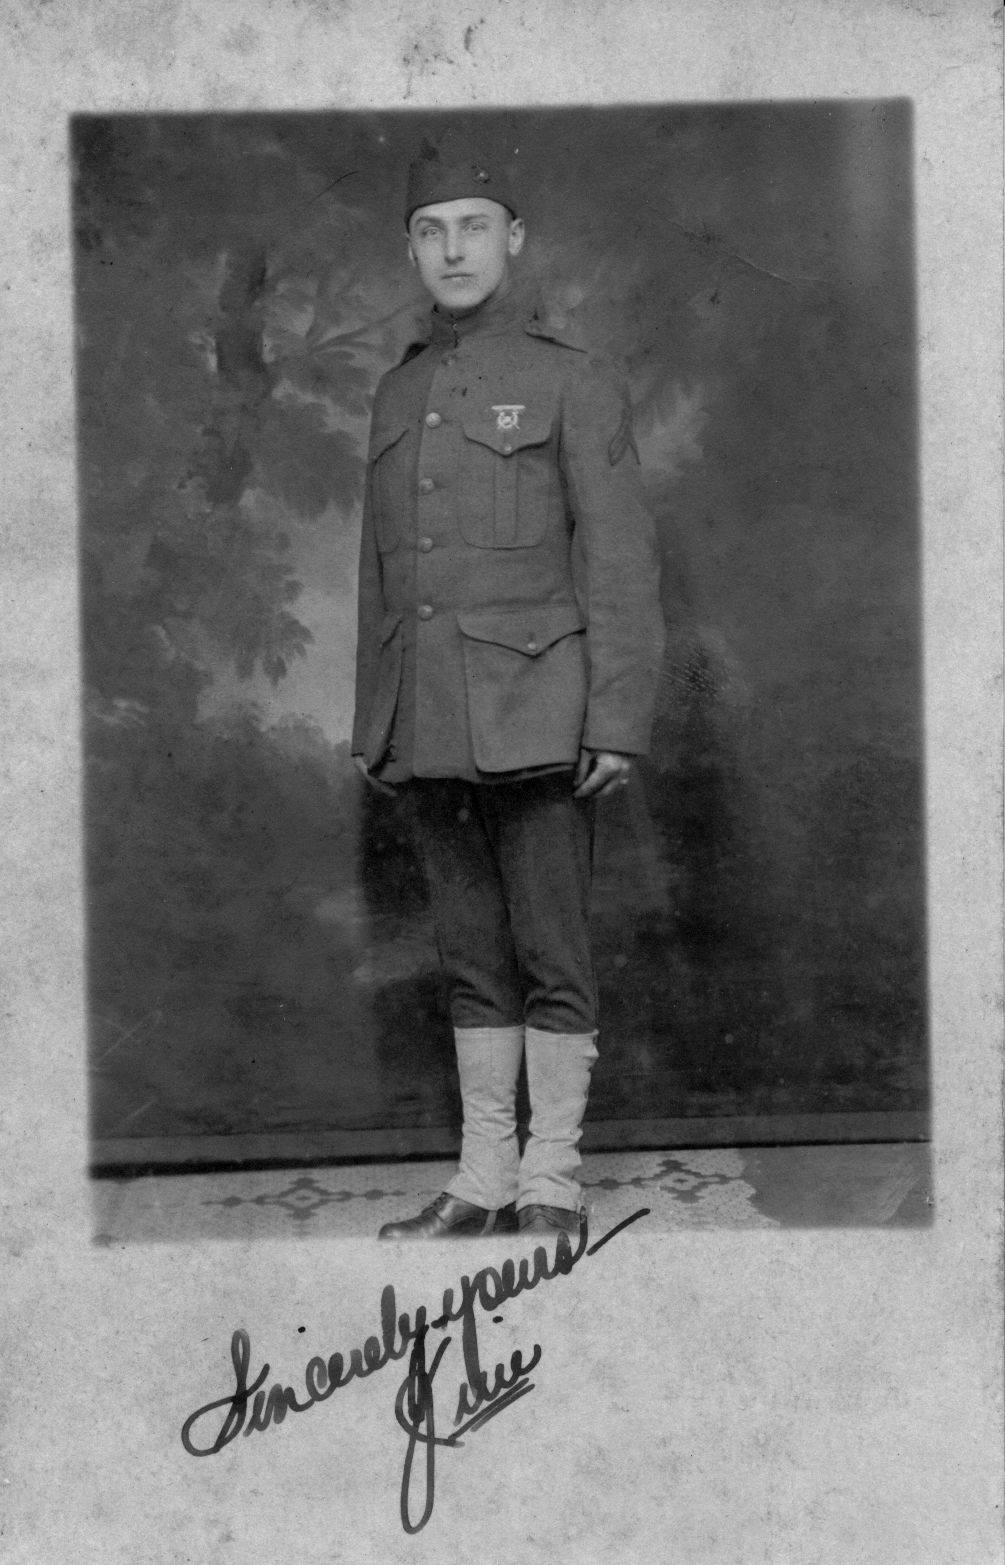 Jim McRoberts in uniform 1918